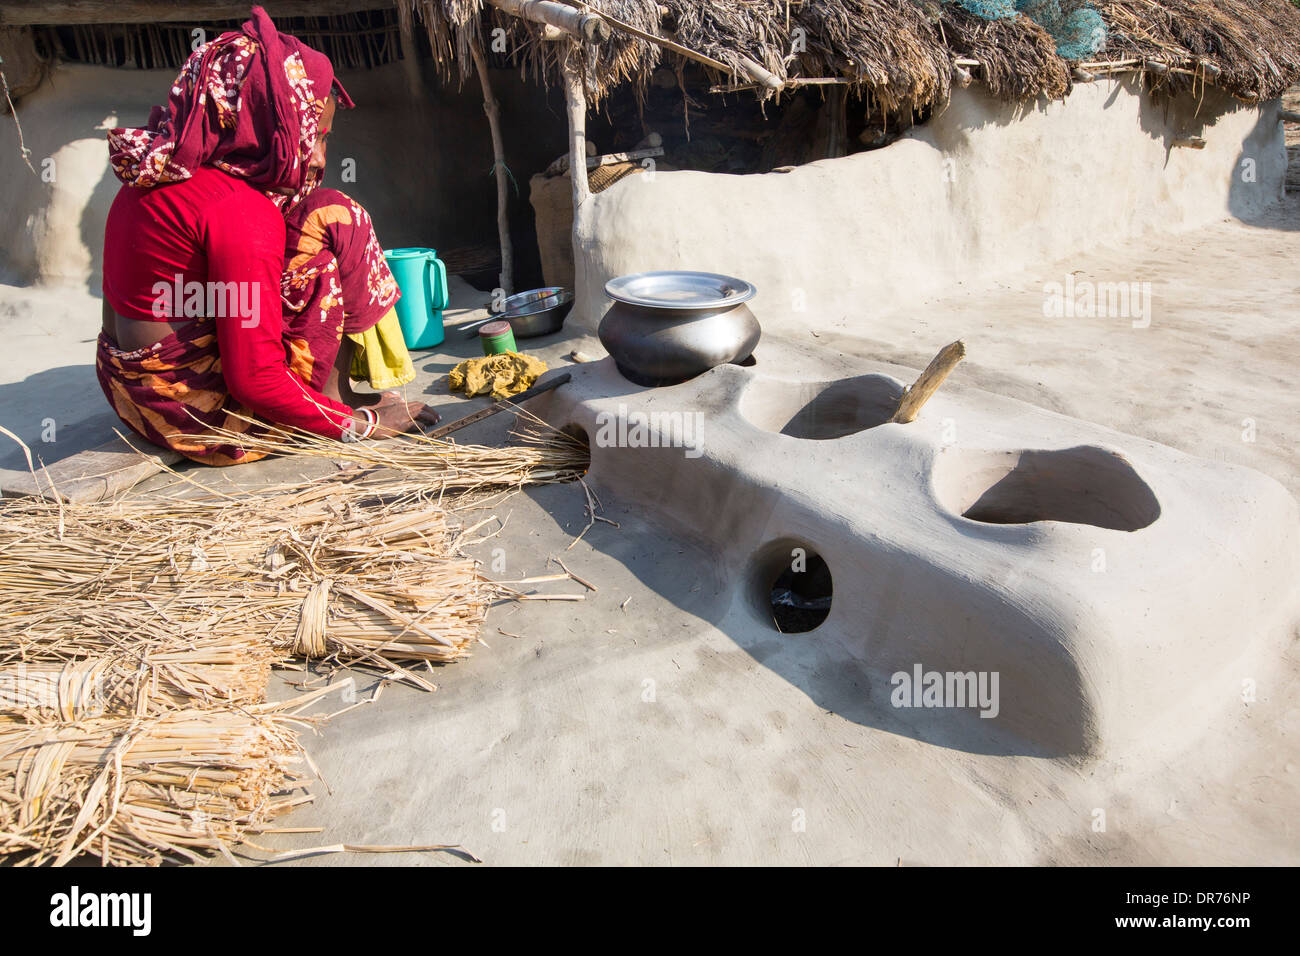 Une femme agriculteur de subsistance la cuisson sur un four en argile traditionnel, à l'aide de tiges de riz comme biocarburant dans les Sunderbans, Ganges, Delta, de l'Inde. La région est très faible élévation et vulnérables à la montée du niveau de la mer. Toutes les parties de la récolte de riz sont utilisés, et la vie des villageois est très autonome, avec une petite empreinte carbone. Banque D'Images